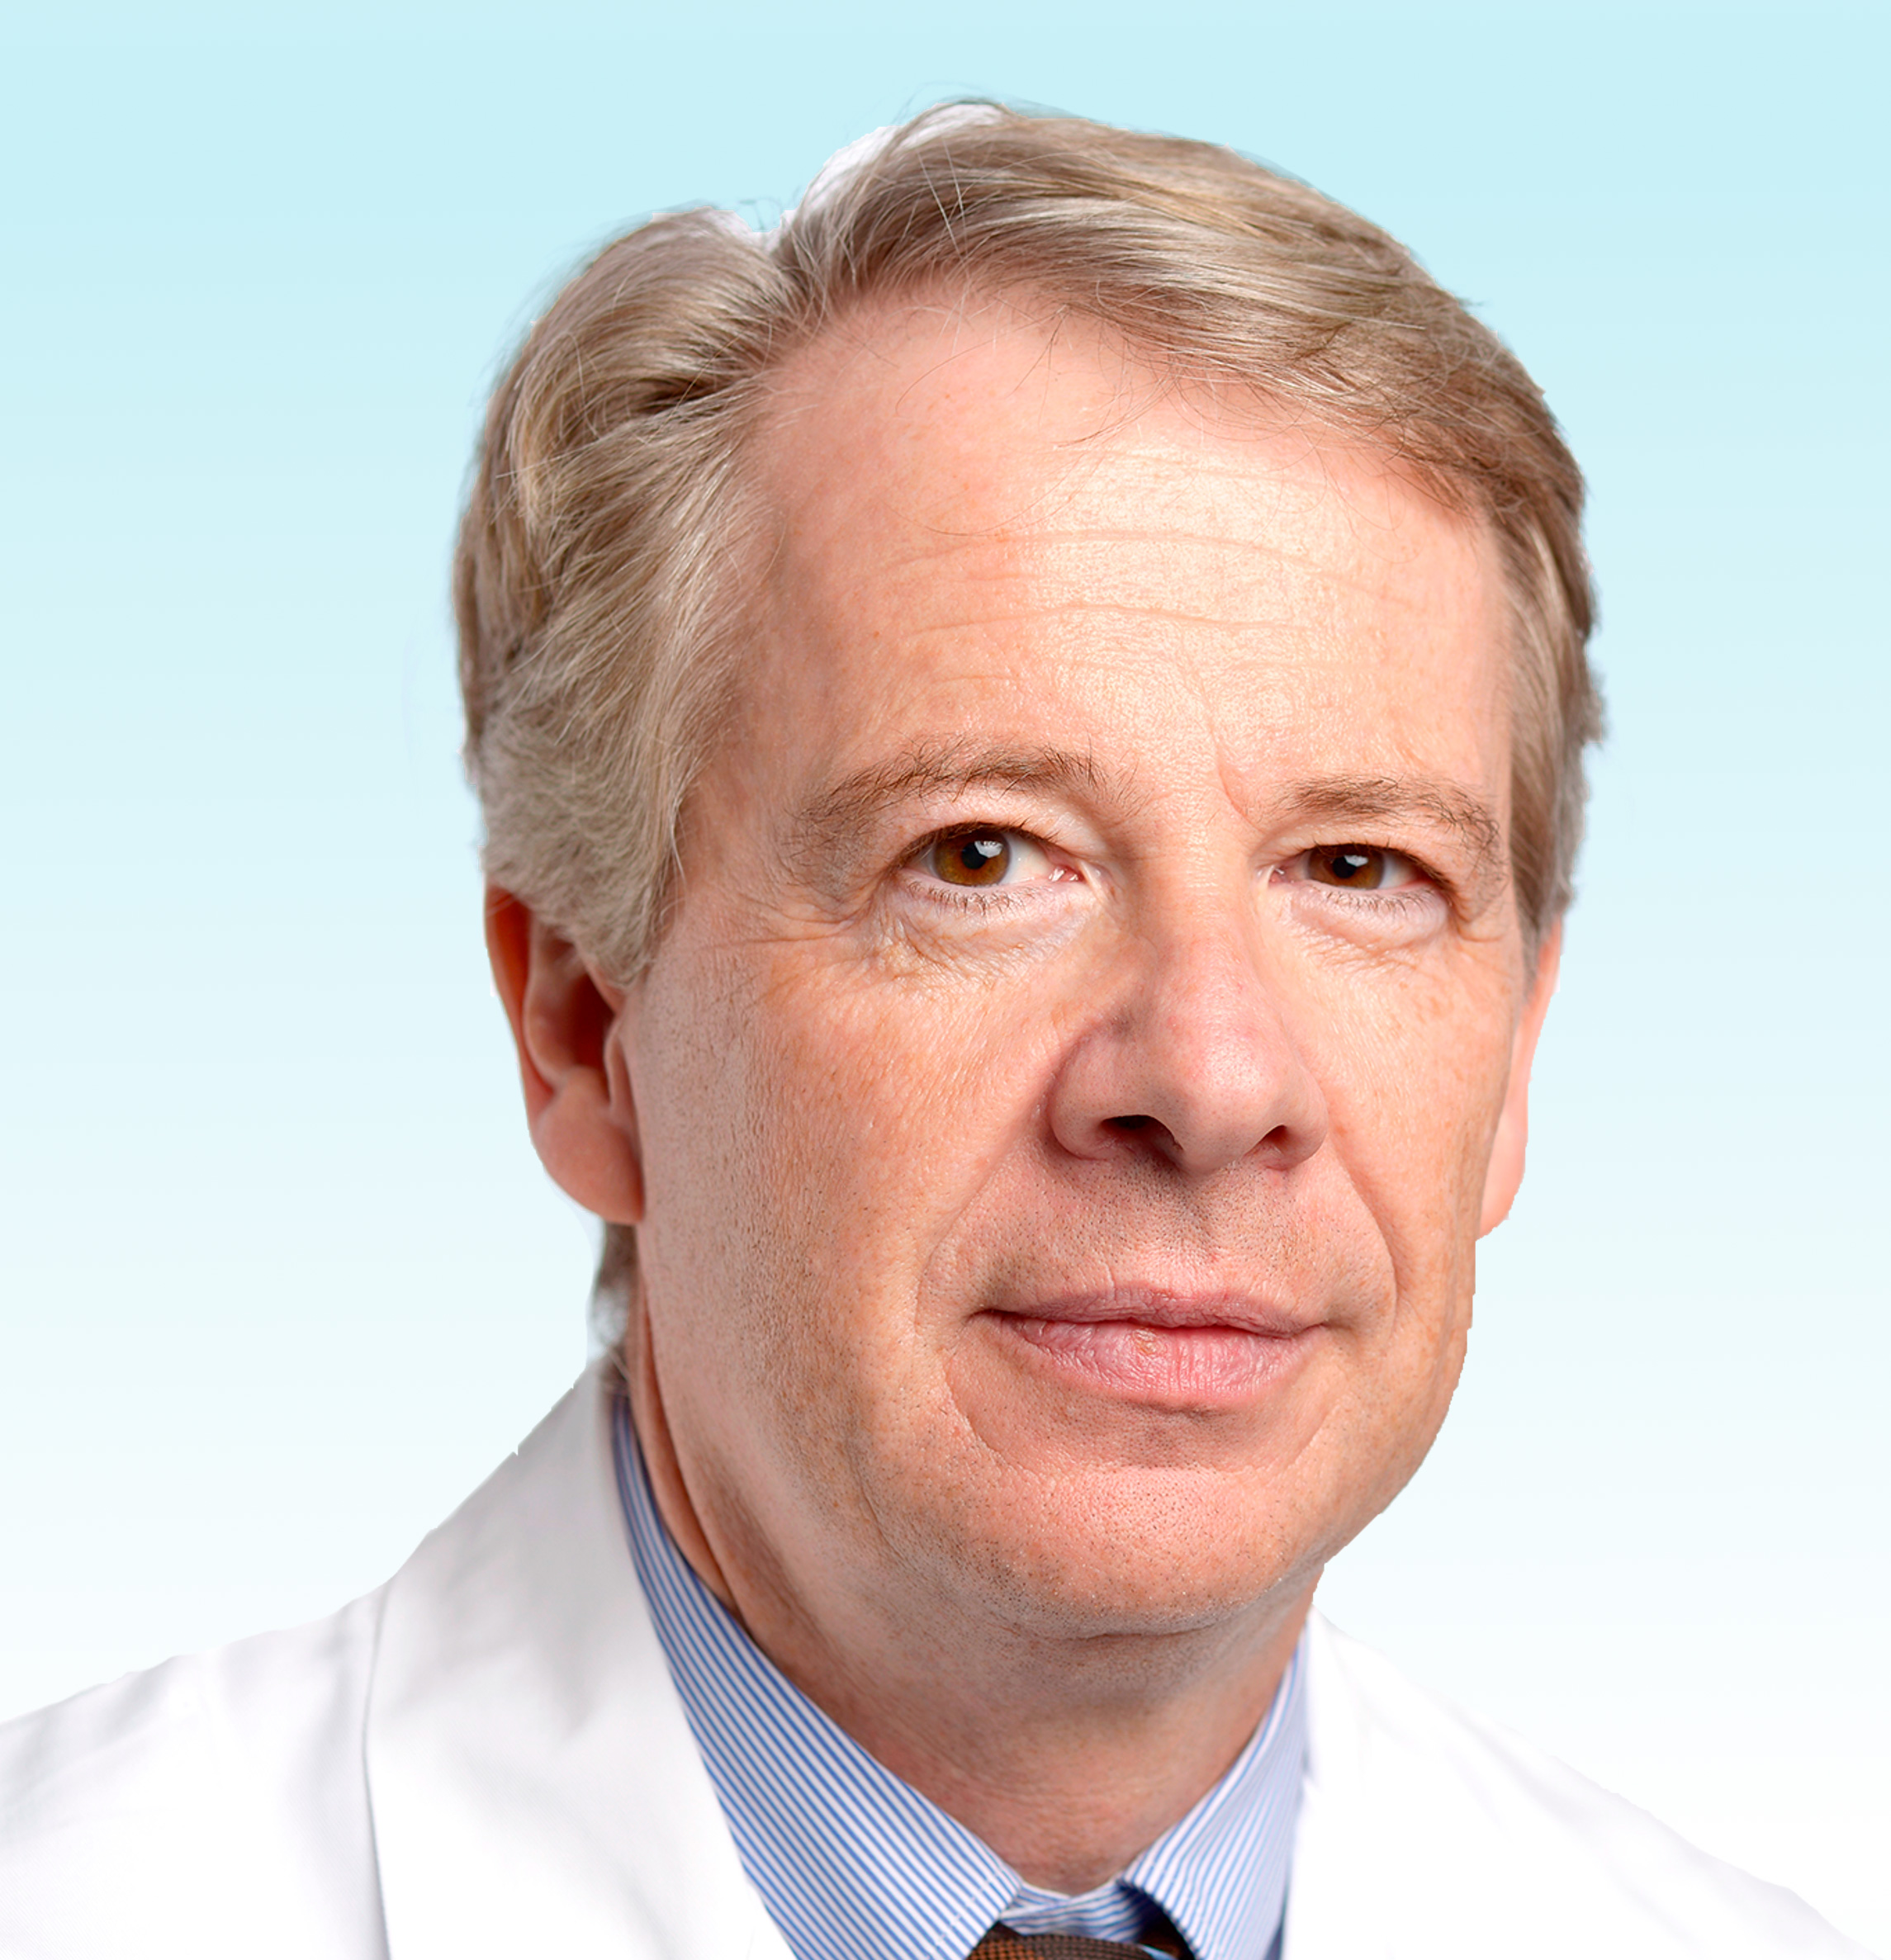 Hautarzt, Prof. Dr. med. Stephan Lautenschlager